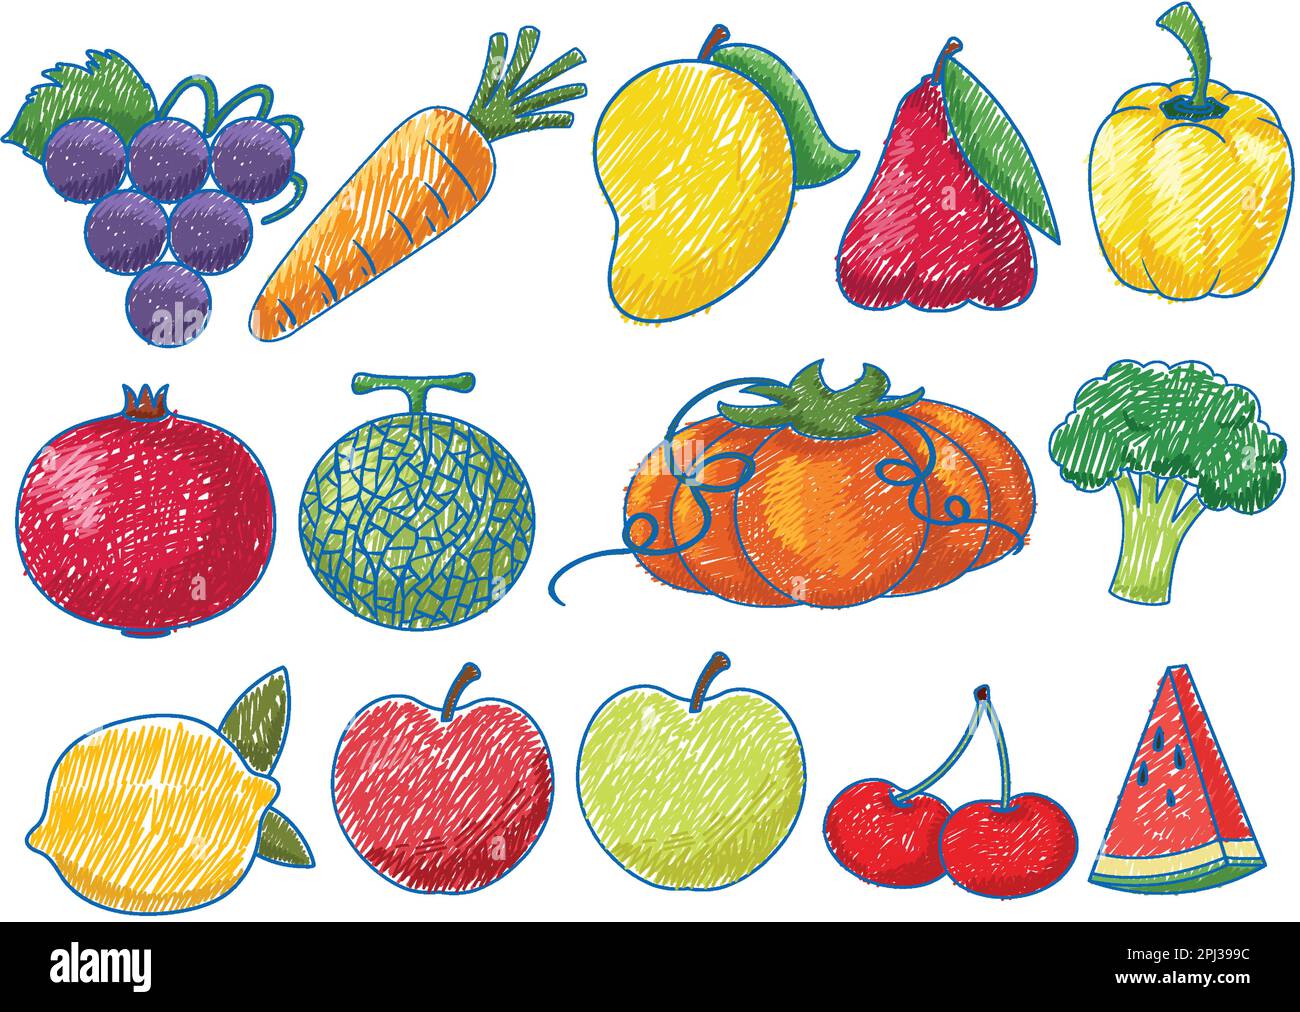 Pencil Vegetables Stock Illustrations – 1,302 Pencil Vegetables Stock  Illustrations, Vectors & Clipart - Dreamstime